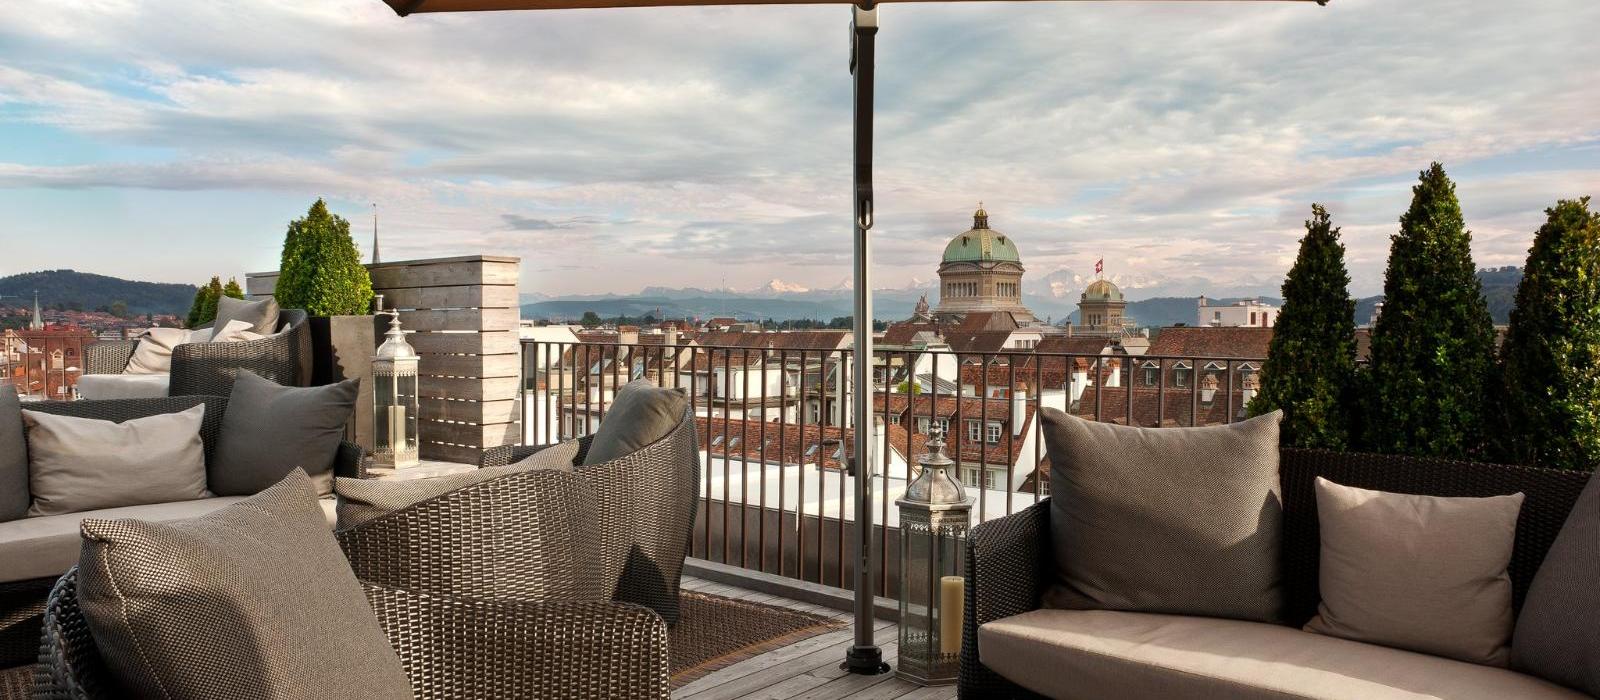 伯尔尼玺威豪酒店(Hotel Schweizerhof Bern & THE SPA) 露台图片  www.lhw.cn